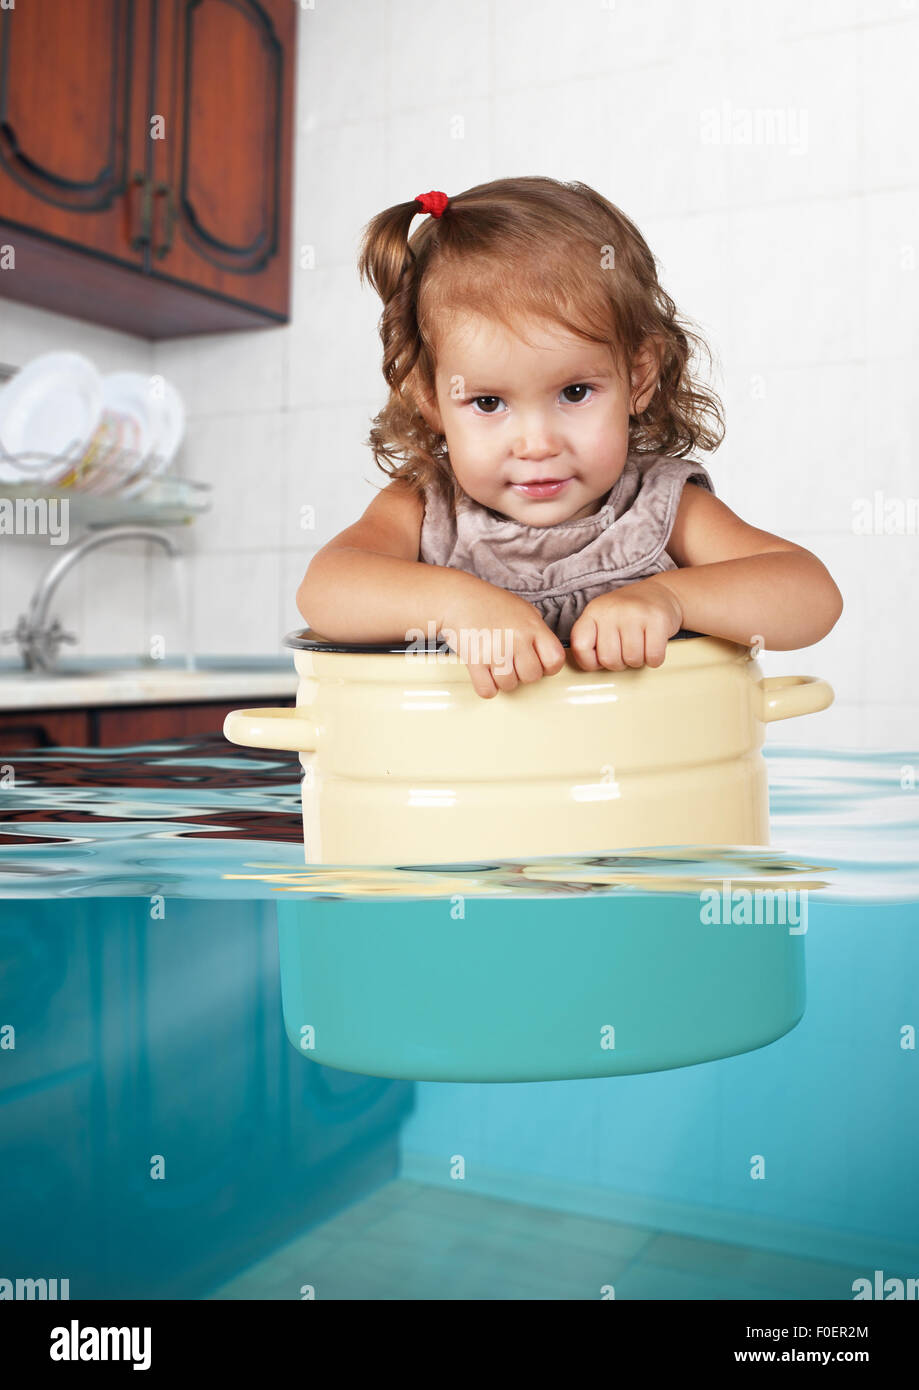 Funny ragazzino nuotare in padella in cucina allagata, turbolenti concetto creativo Foto Stock